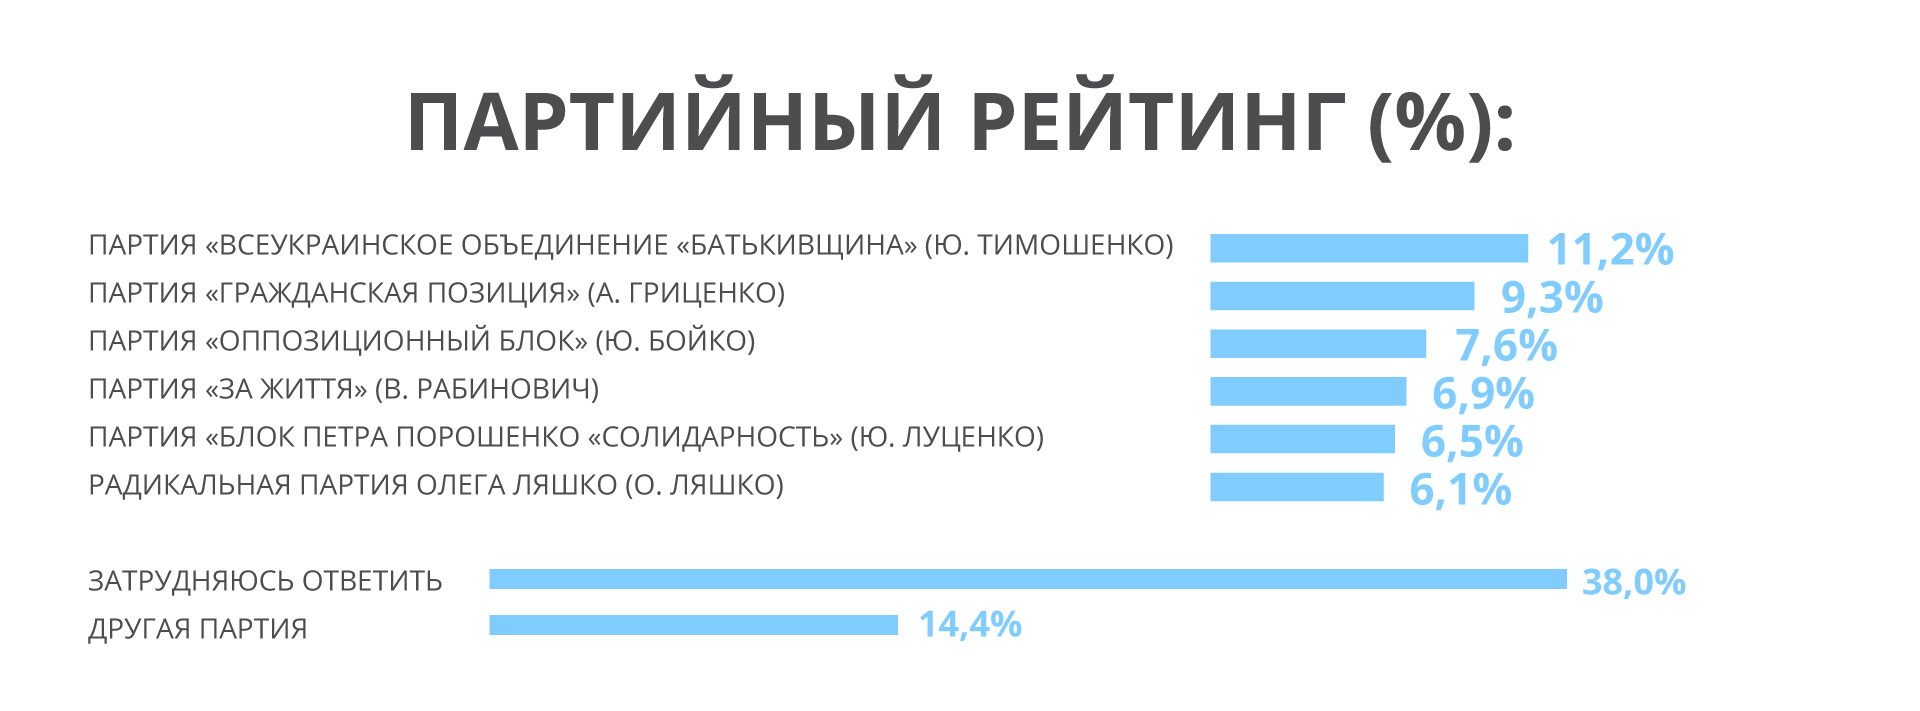 Партия «За життя» получила наибольшую поддержку среди населения юга и востока Украины, – пул социологов